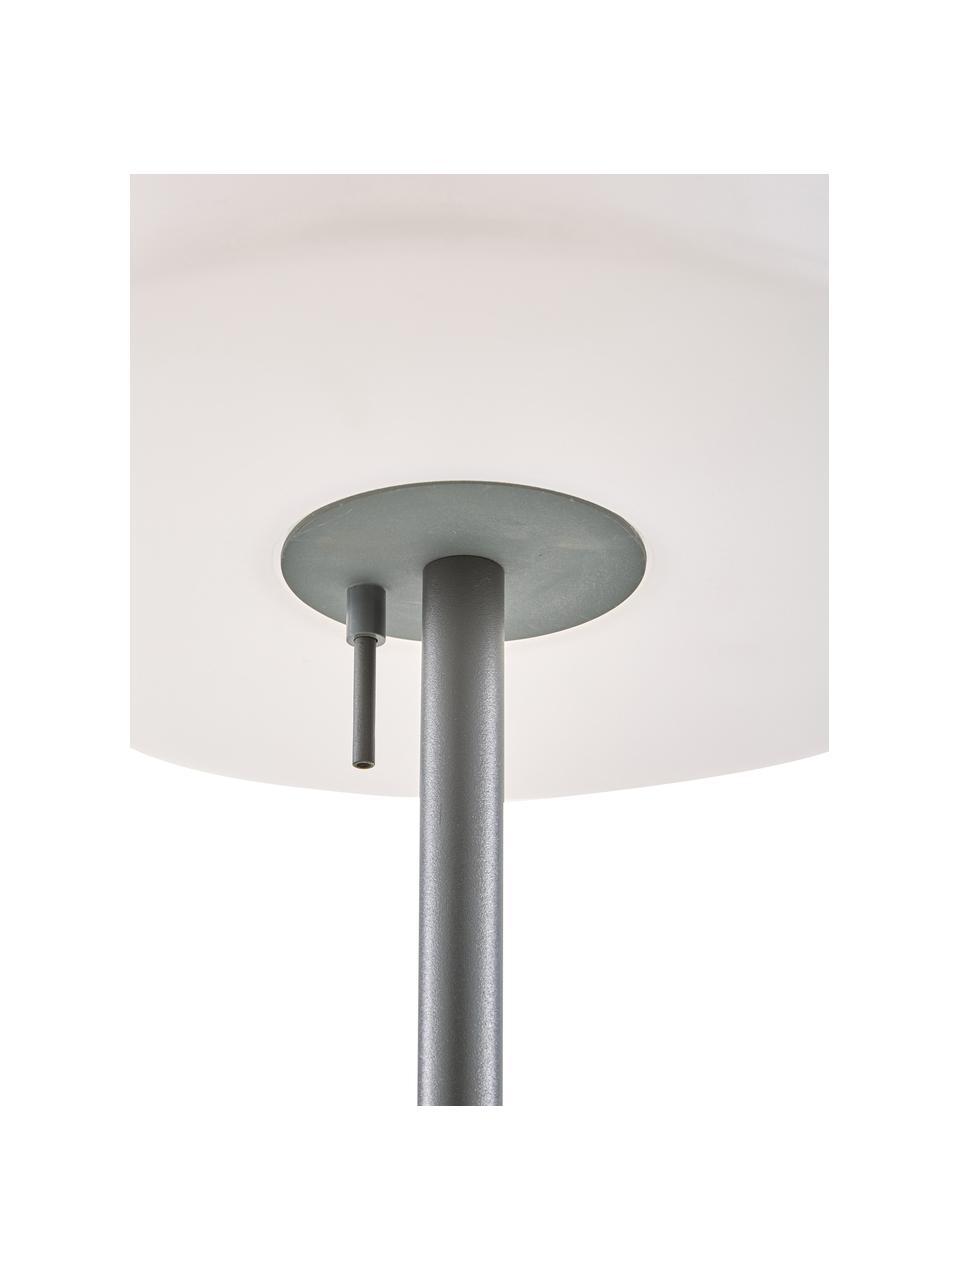 Mobiele outdoor vloerlamp Gaze, Lampenkap: kunststof, Lampvoet: geanodiseerd aluminium, Lampenkap: wit. Lampvoet: donkergrijs, Ø 35 x H 150 cm